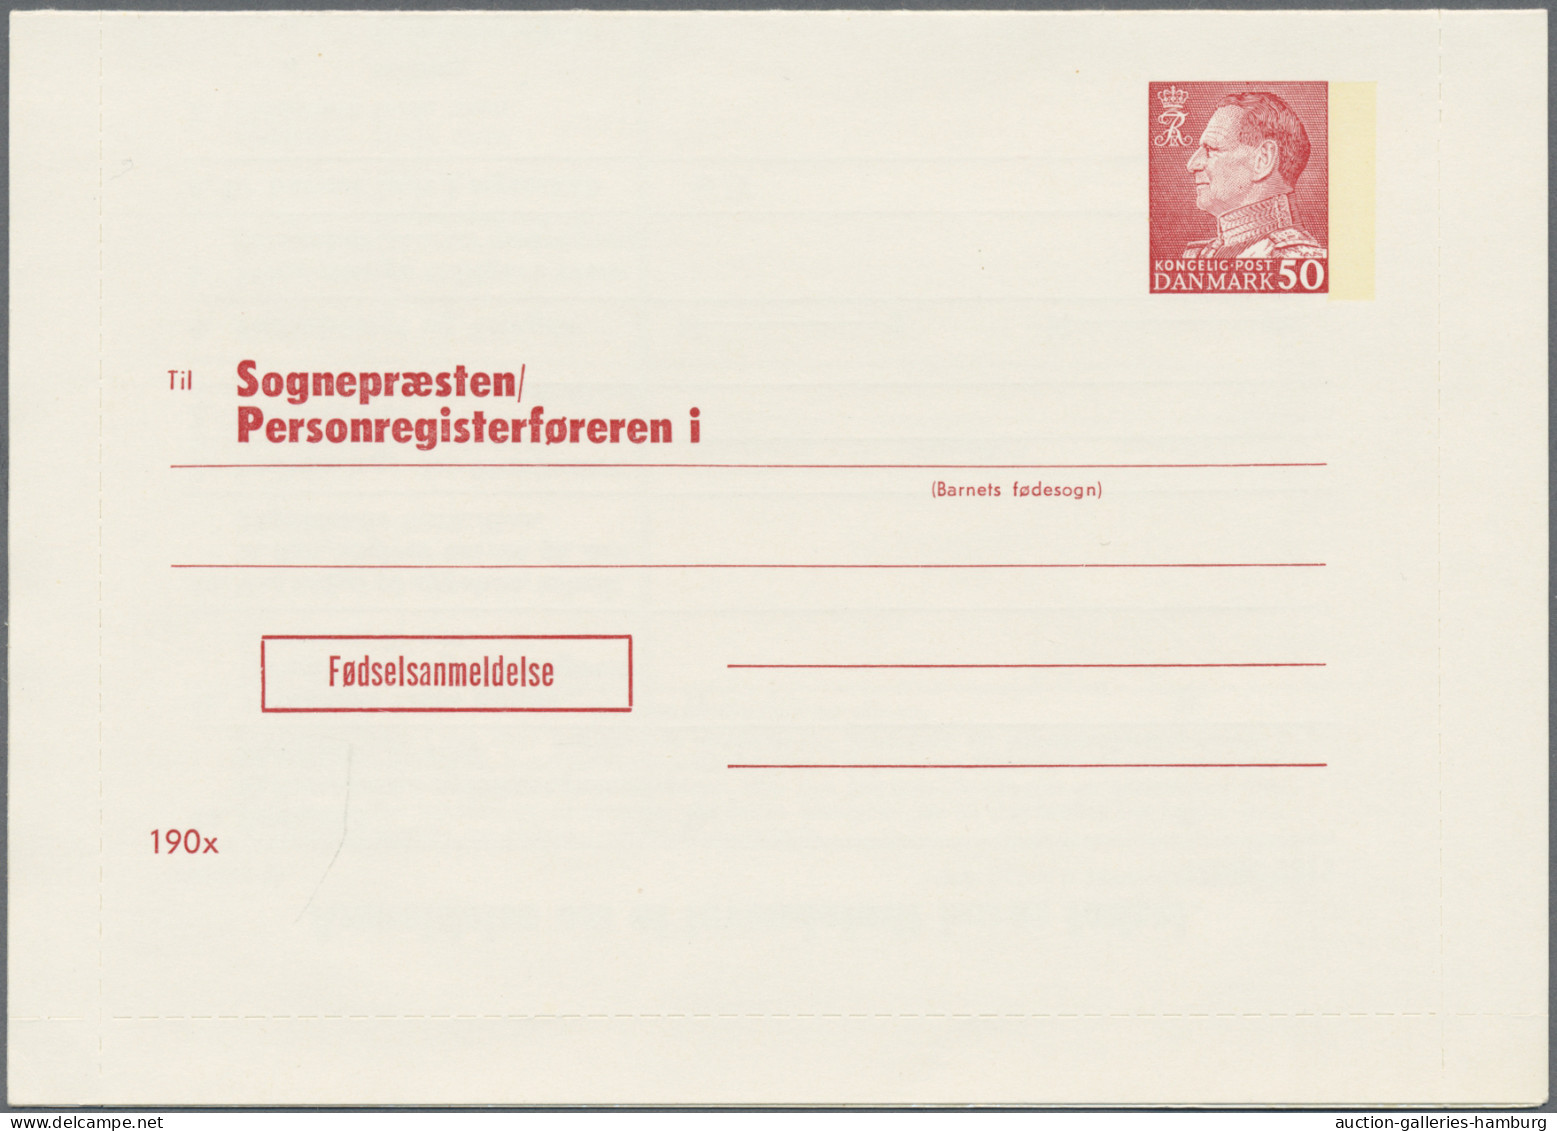 Denmark - postal stationery: 1953/1965, Letter Cards for Population Register, lo